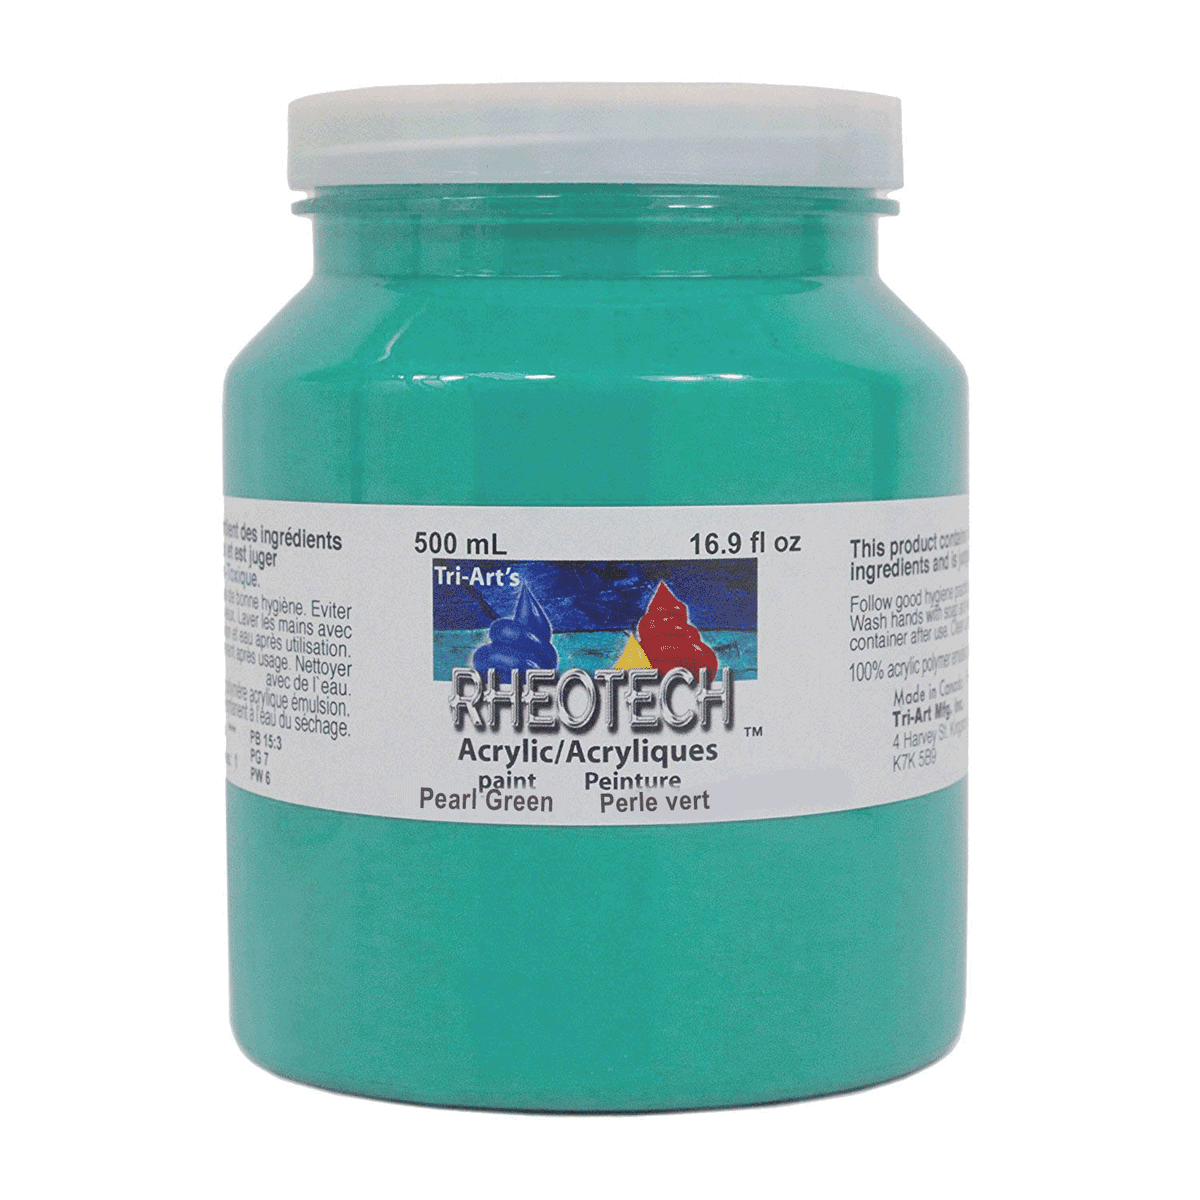 Rheotech Acrylic Pearl Green 500 ml Jar